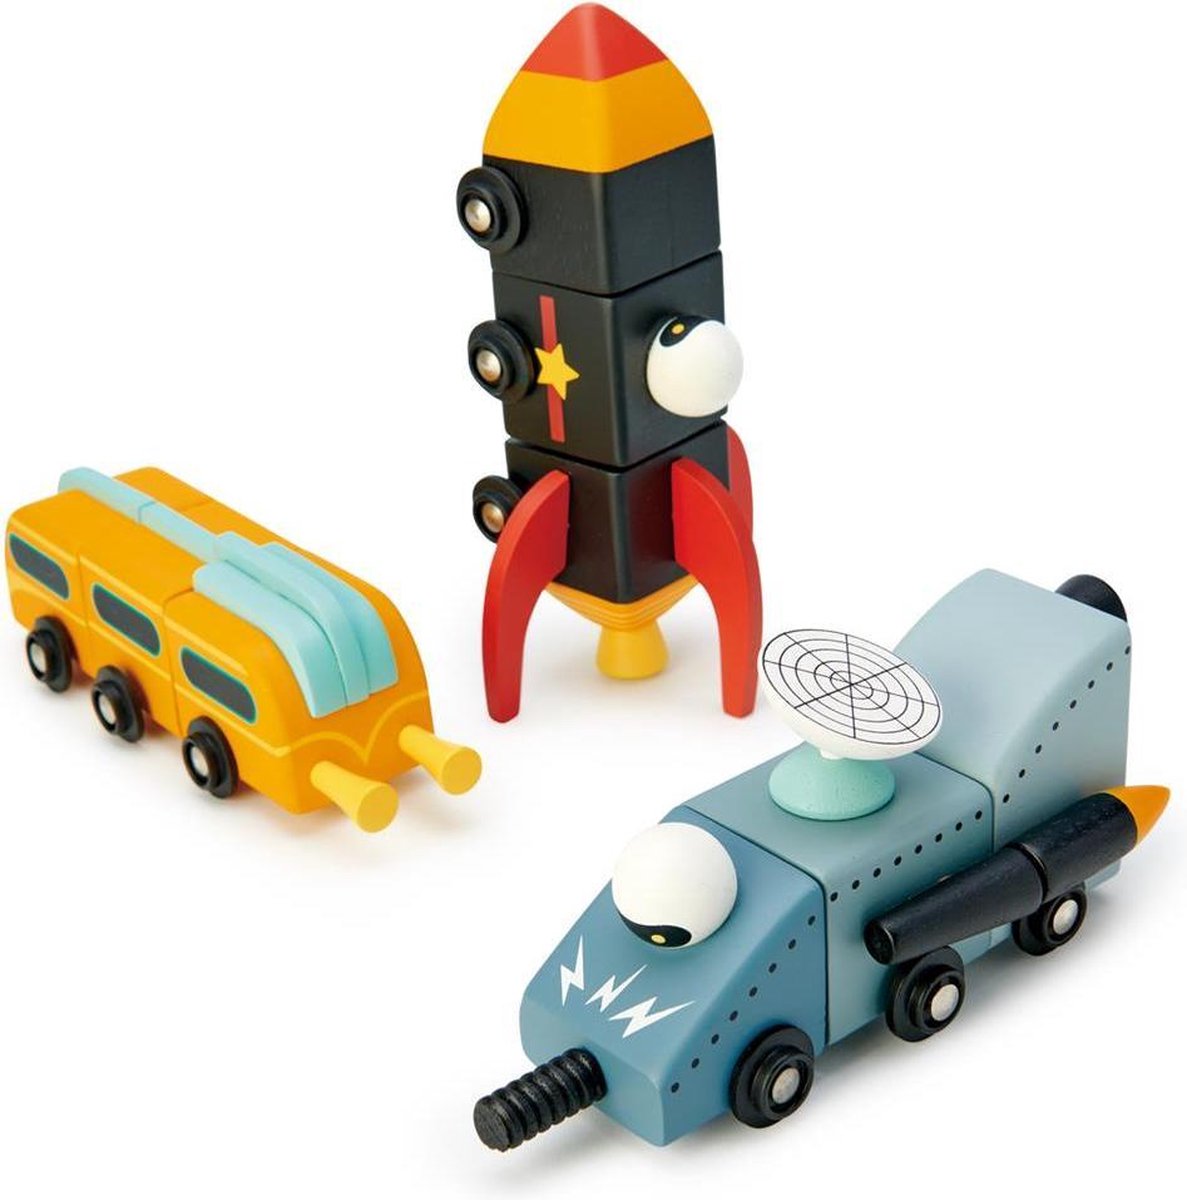 Tender Leaf Toys speelset Space Race junior hout 9 delig